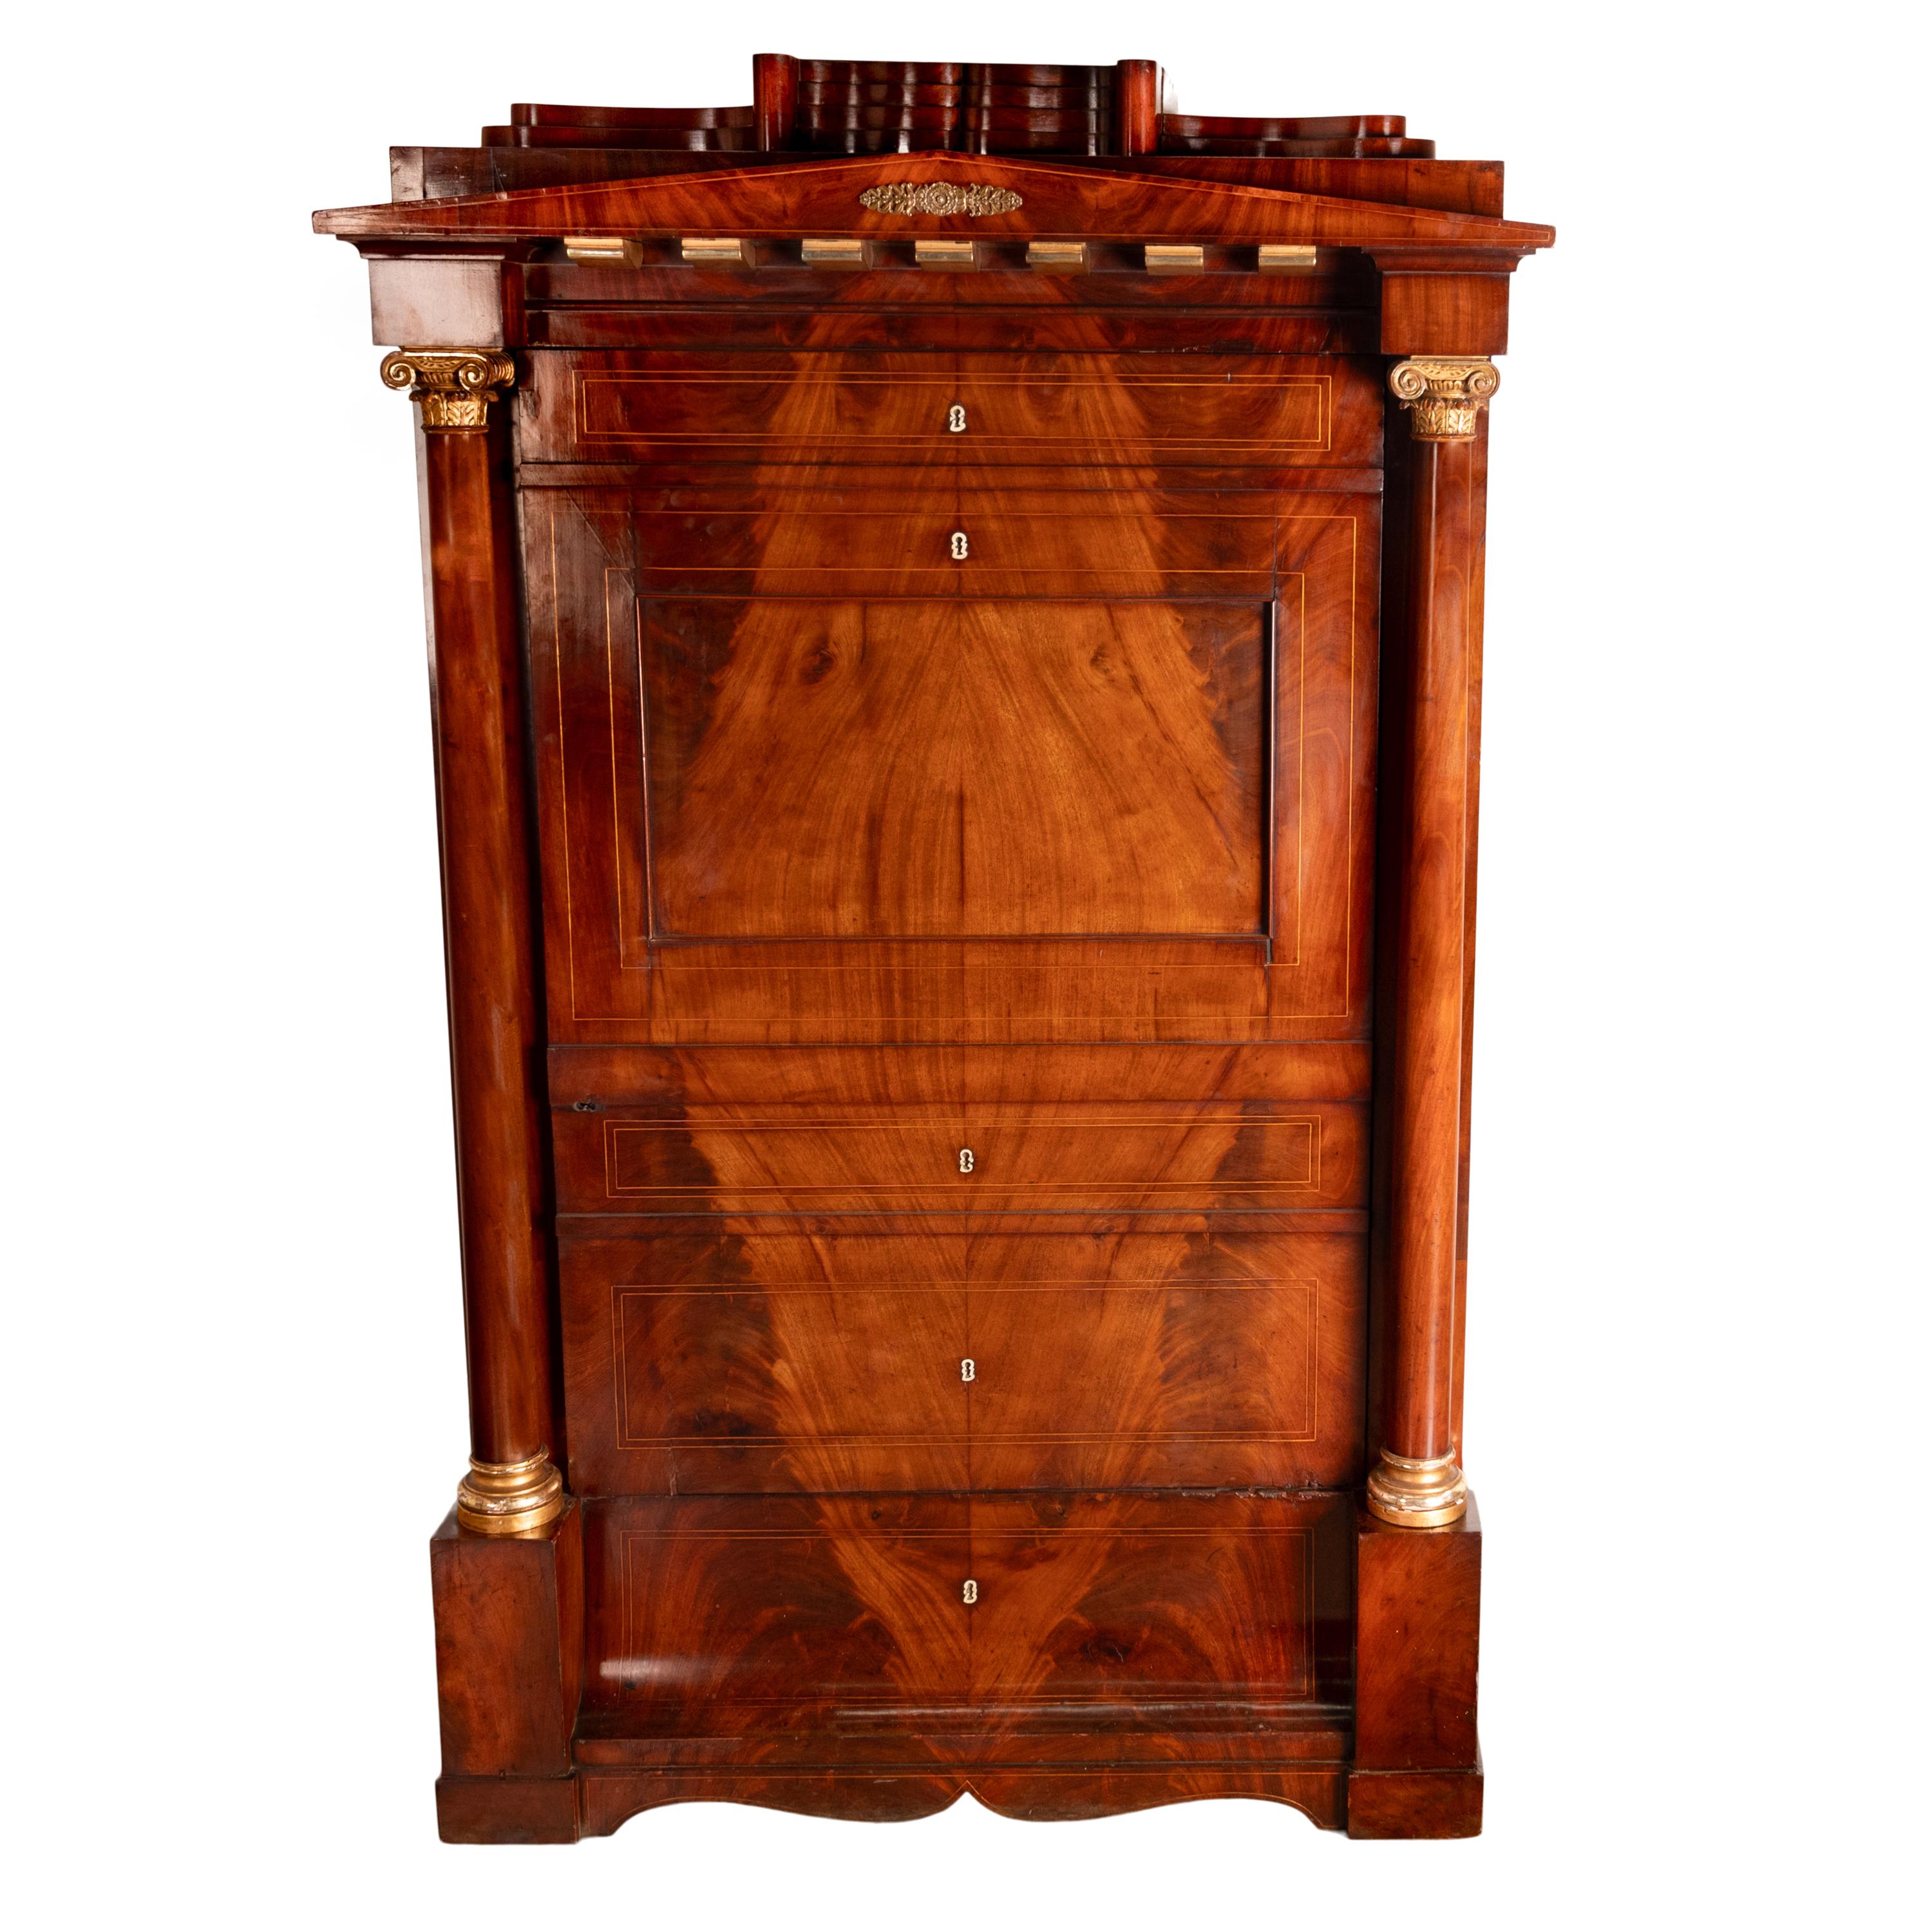 Très belle armoire à vin en acajou et parchemin doré, d'époque Empire français et Napoléon, vers 1810.
Fabriqué dans l'acajou le plus fin, ce meuble a la forme d'un secretaire abattant mais est en fait un meuble armoire compact, dissimulant une